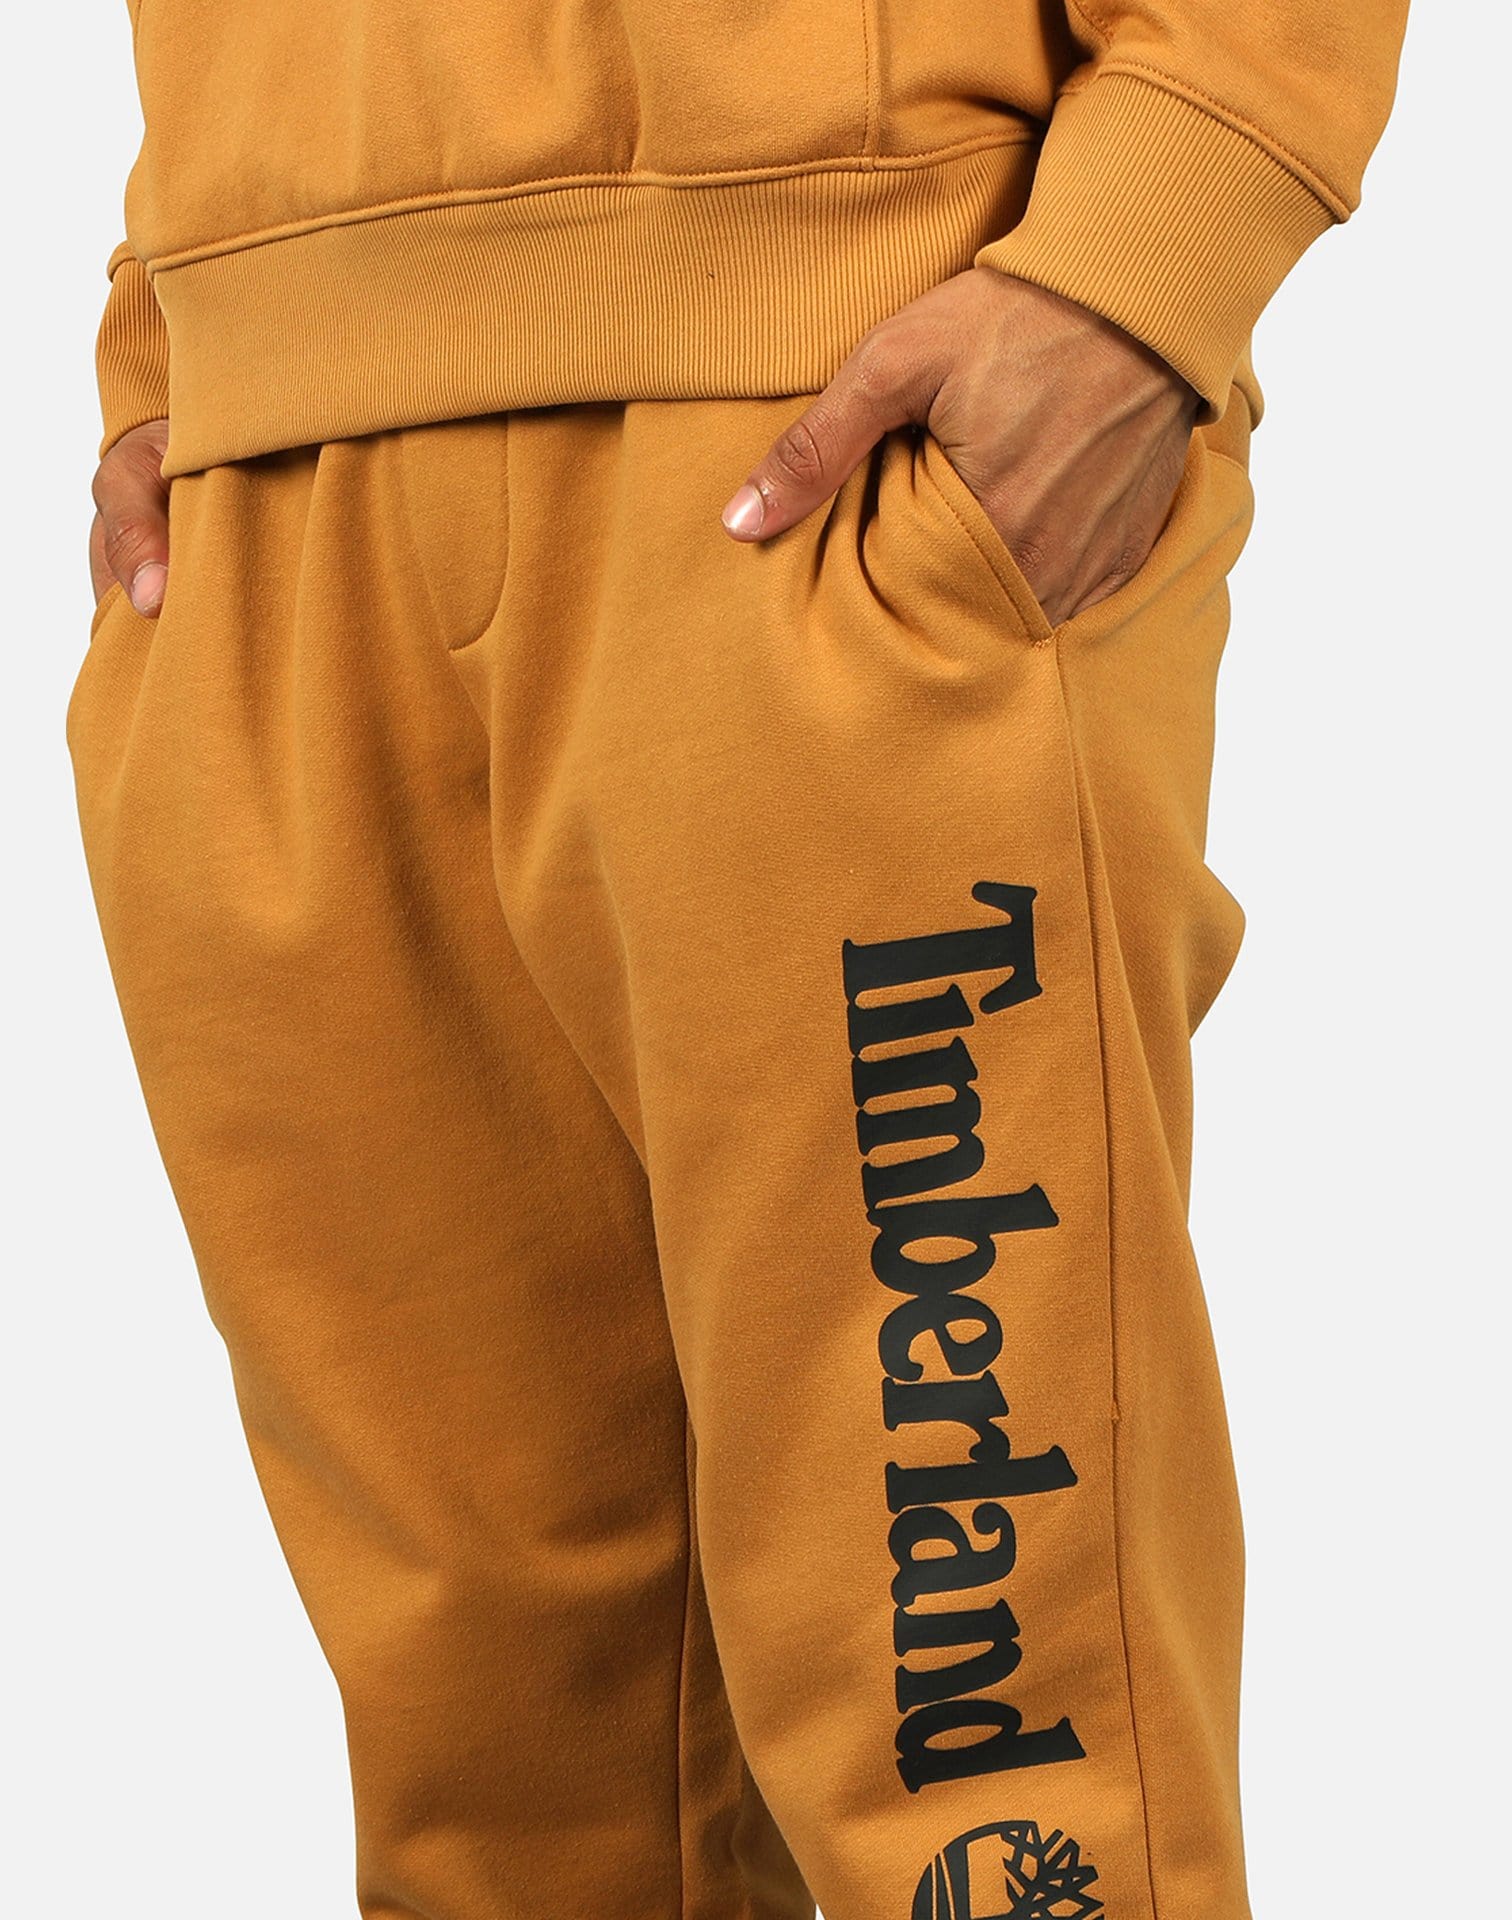 Timberland Men's Linear Logo Pants